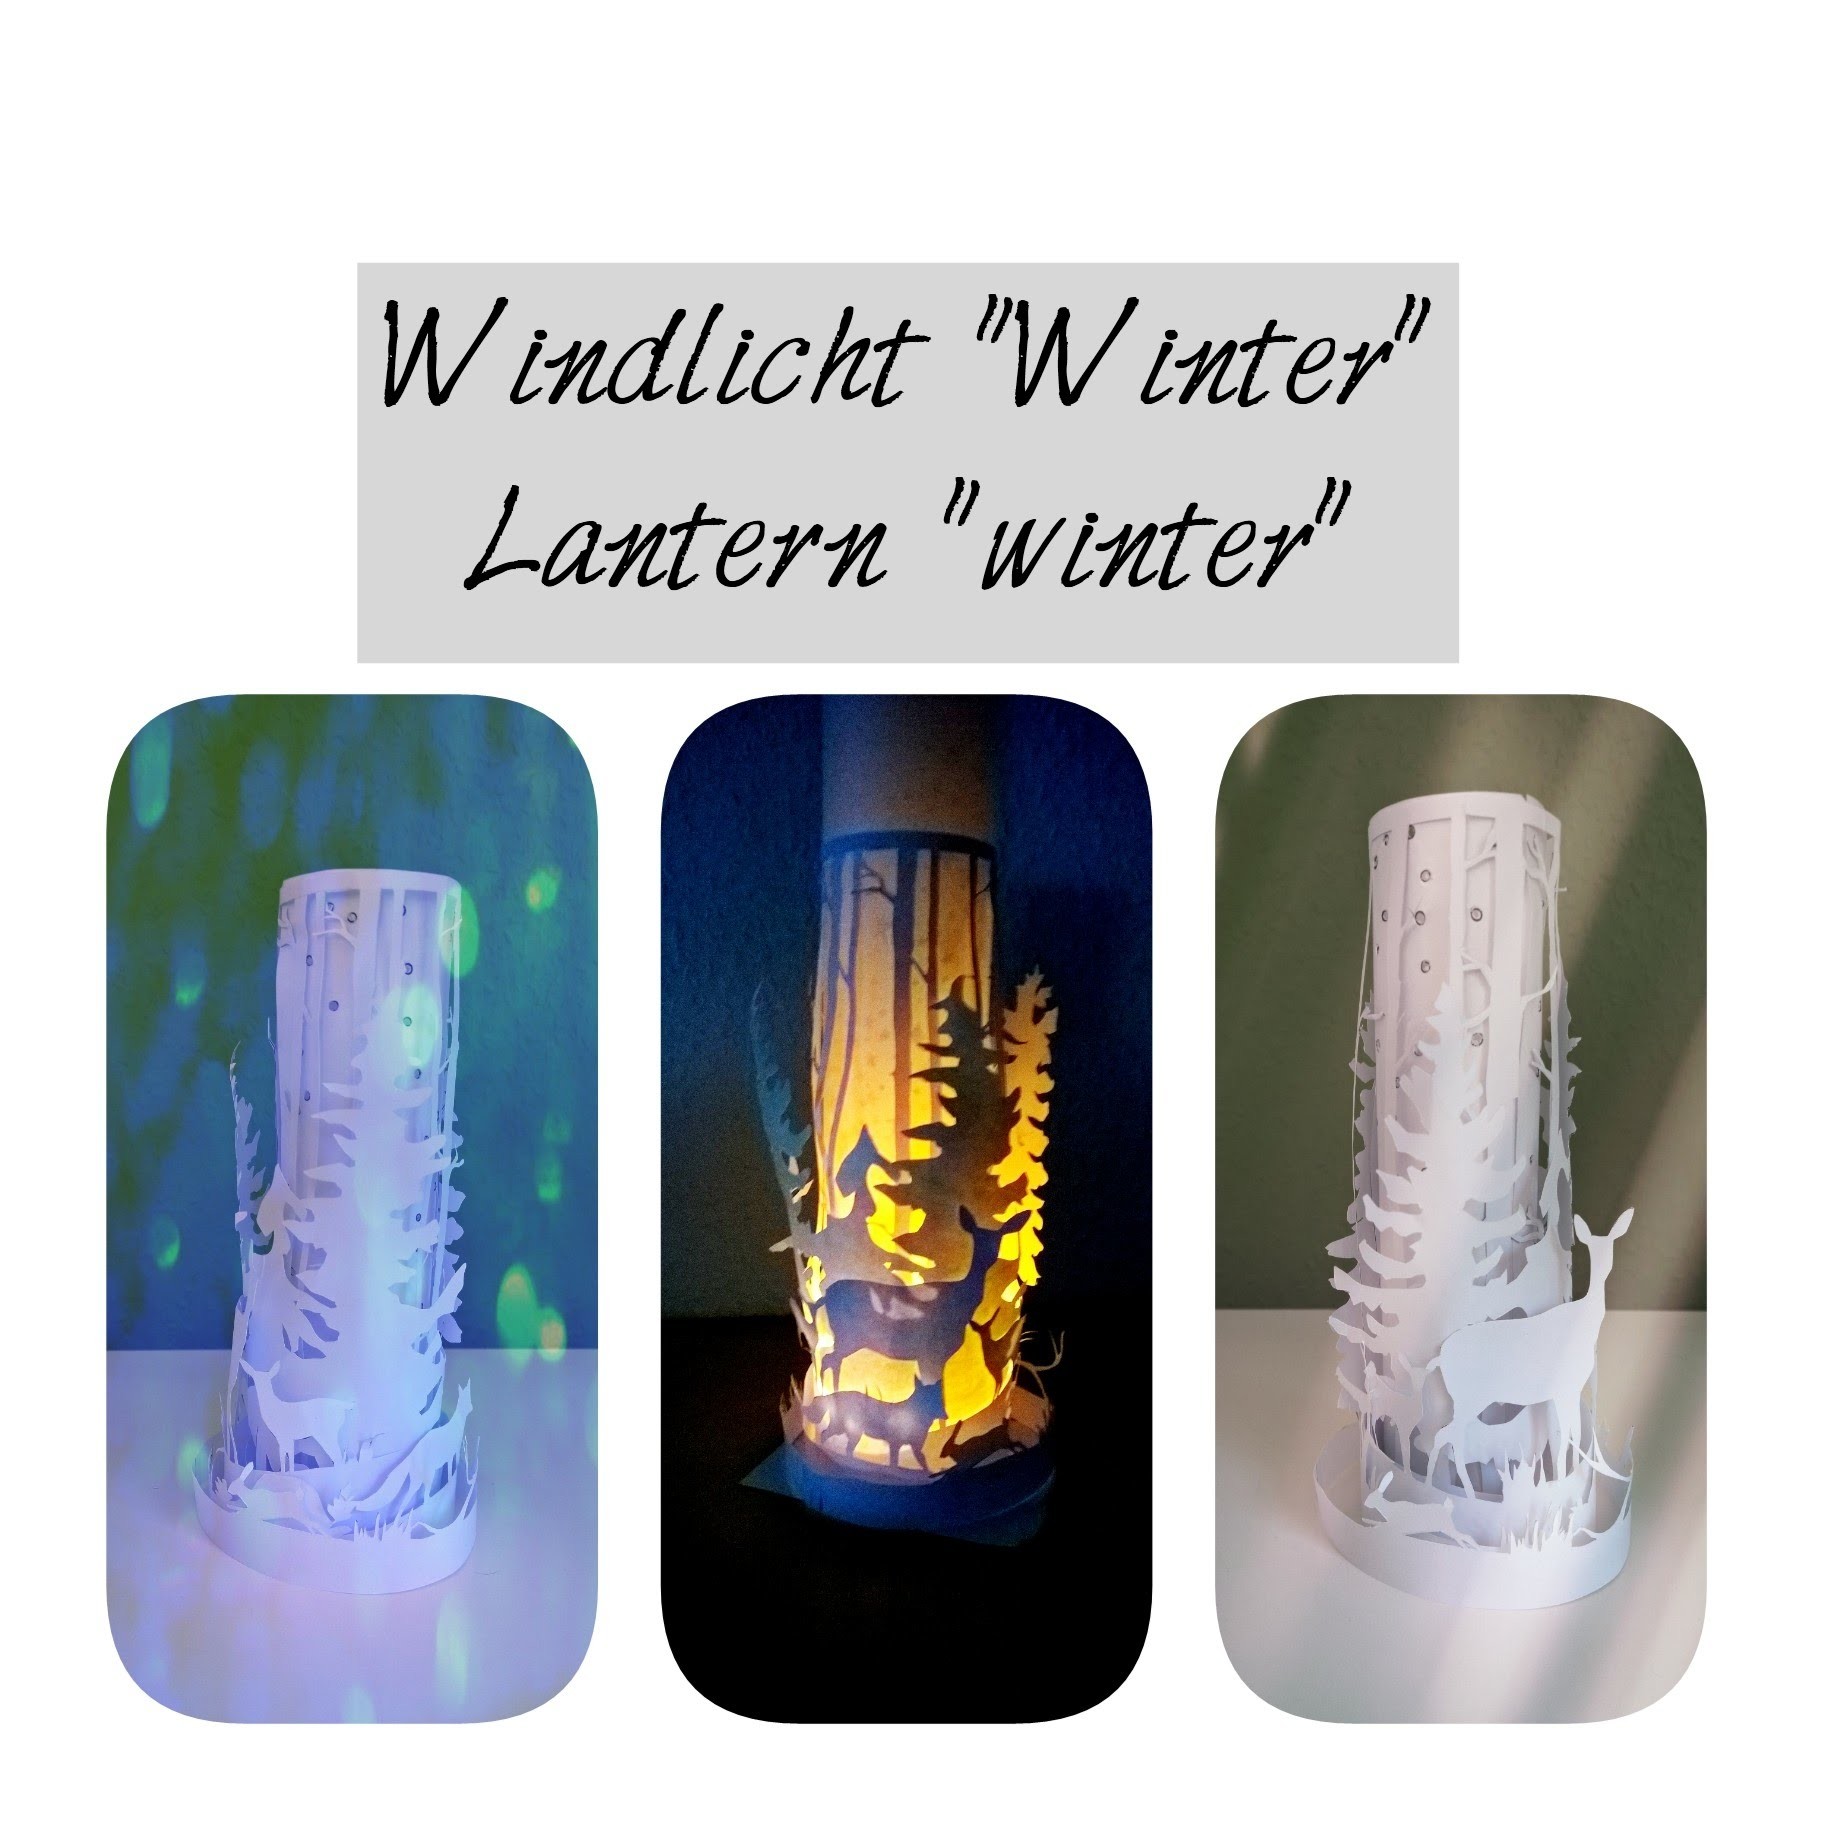 Windlicht "Winter" basteln, paper lantern winter